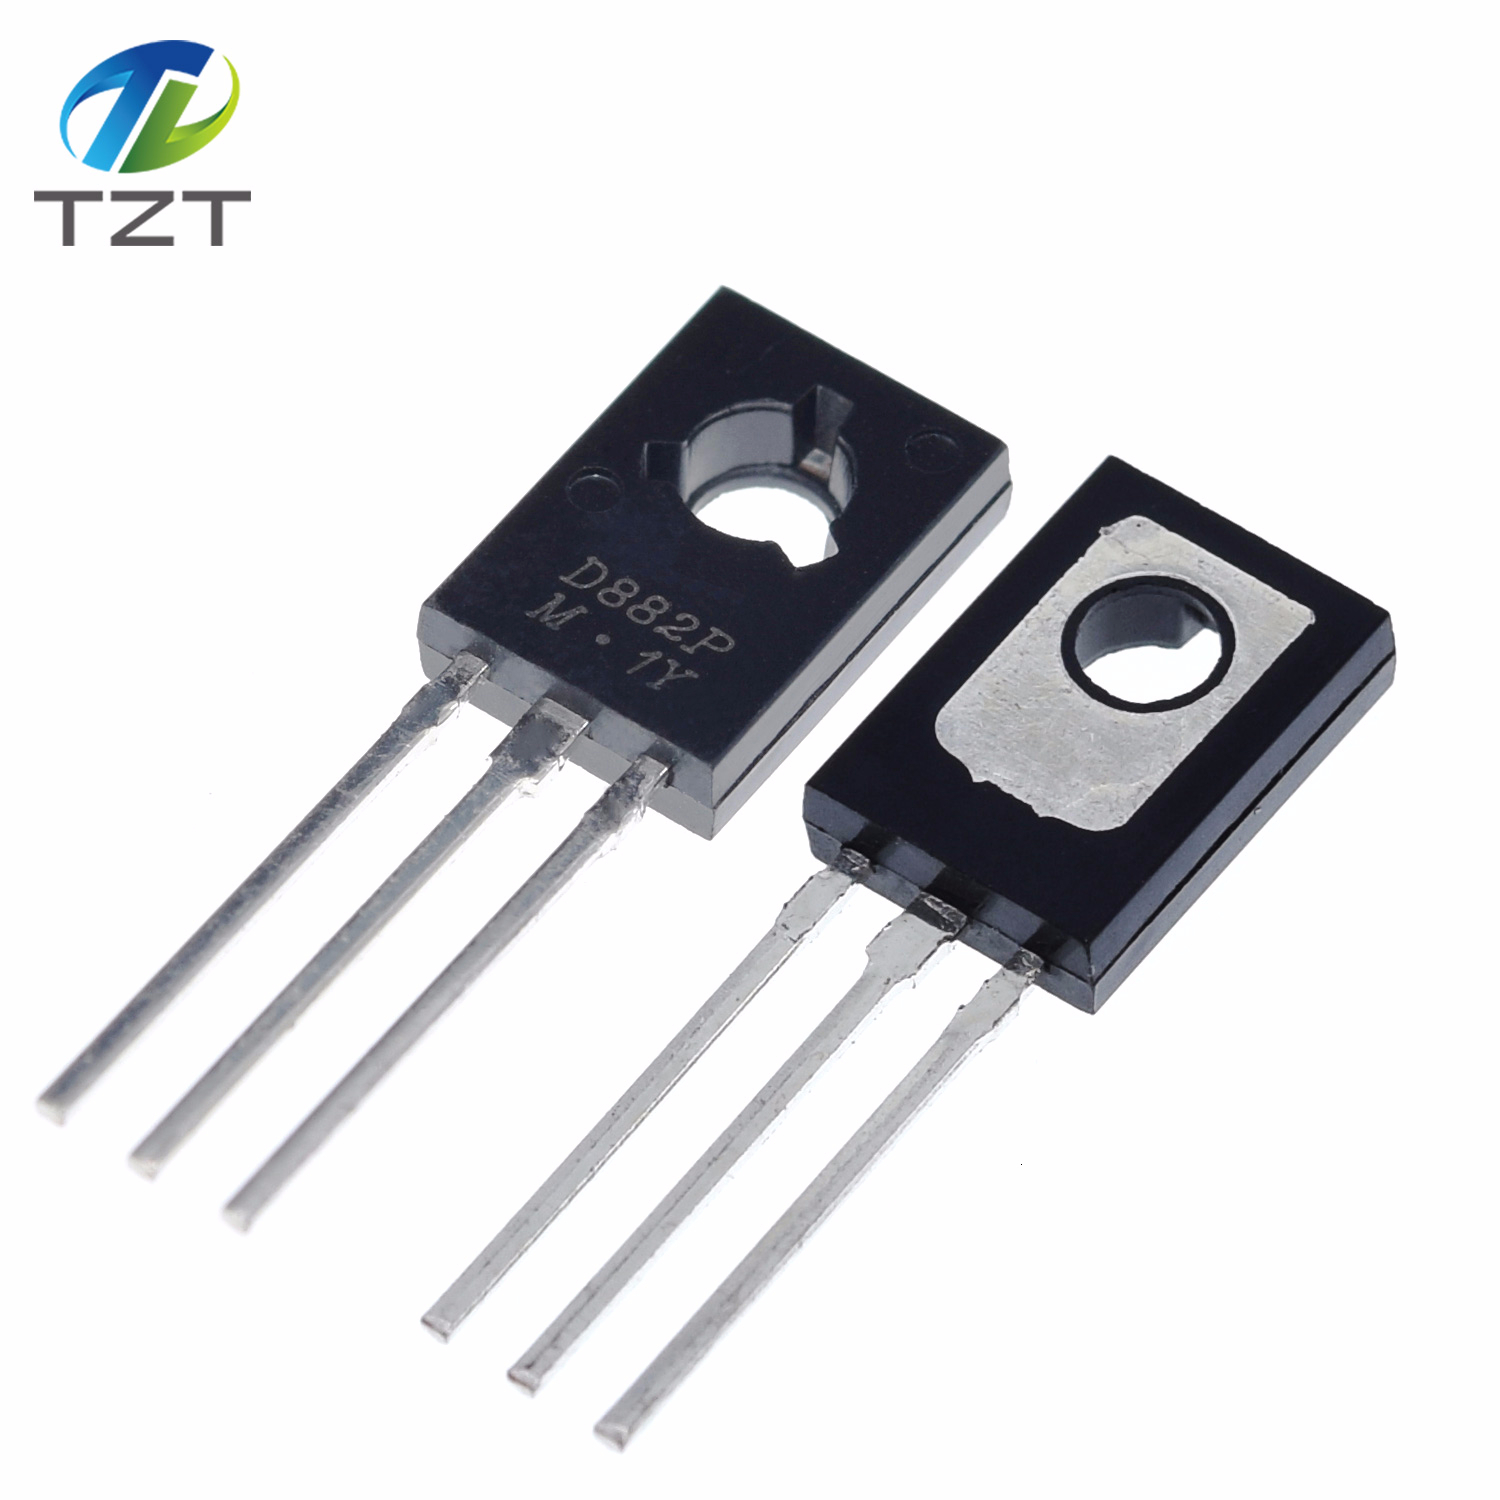 TZT Triode Transistor D882 2SD882 3A/40V TO-126 NPN Power Triode New Original